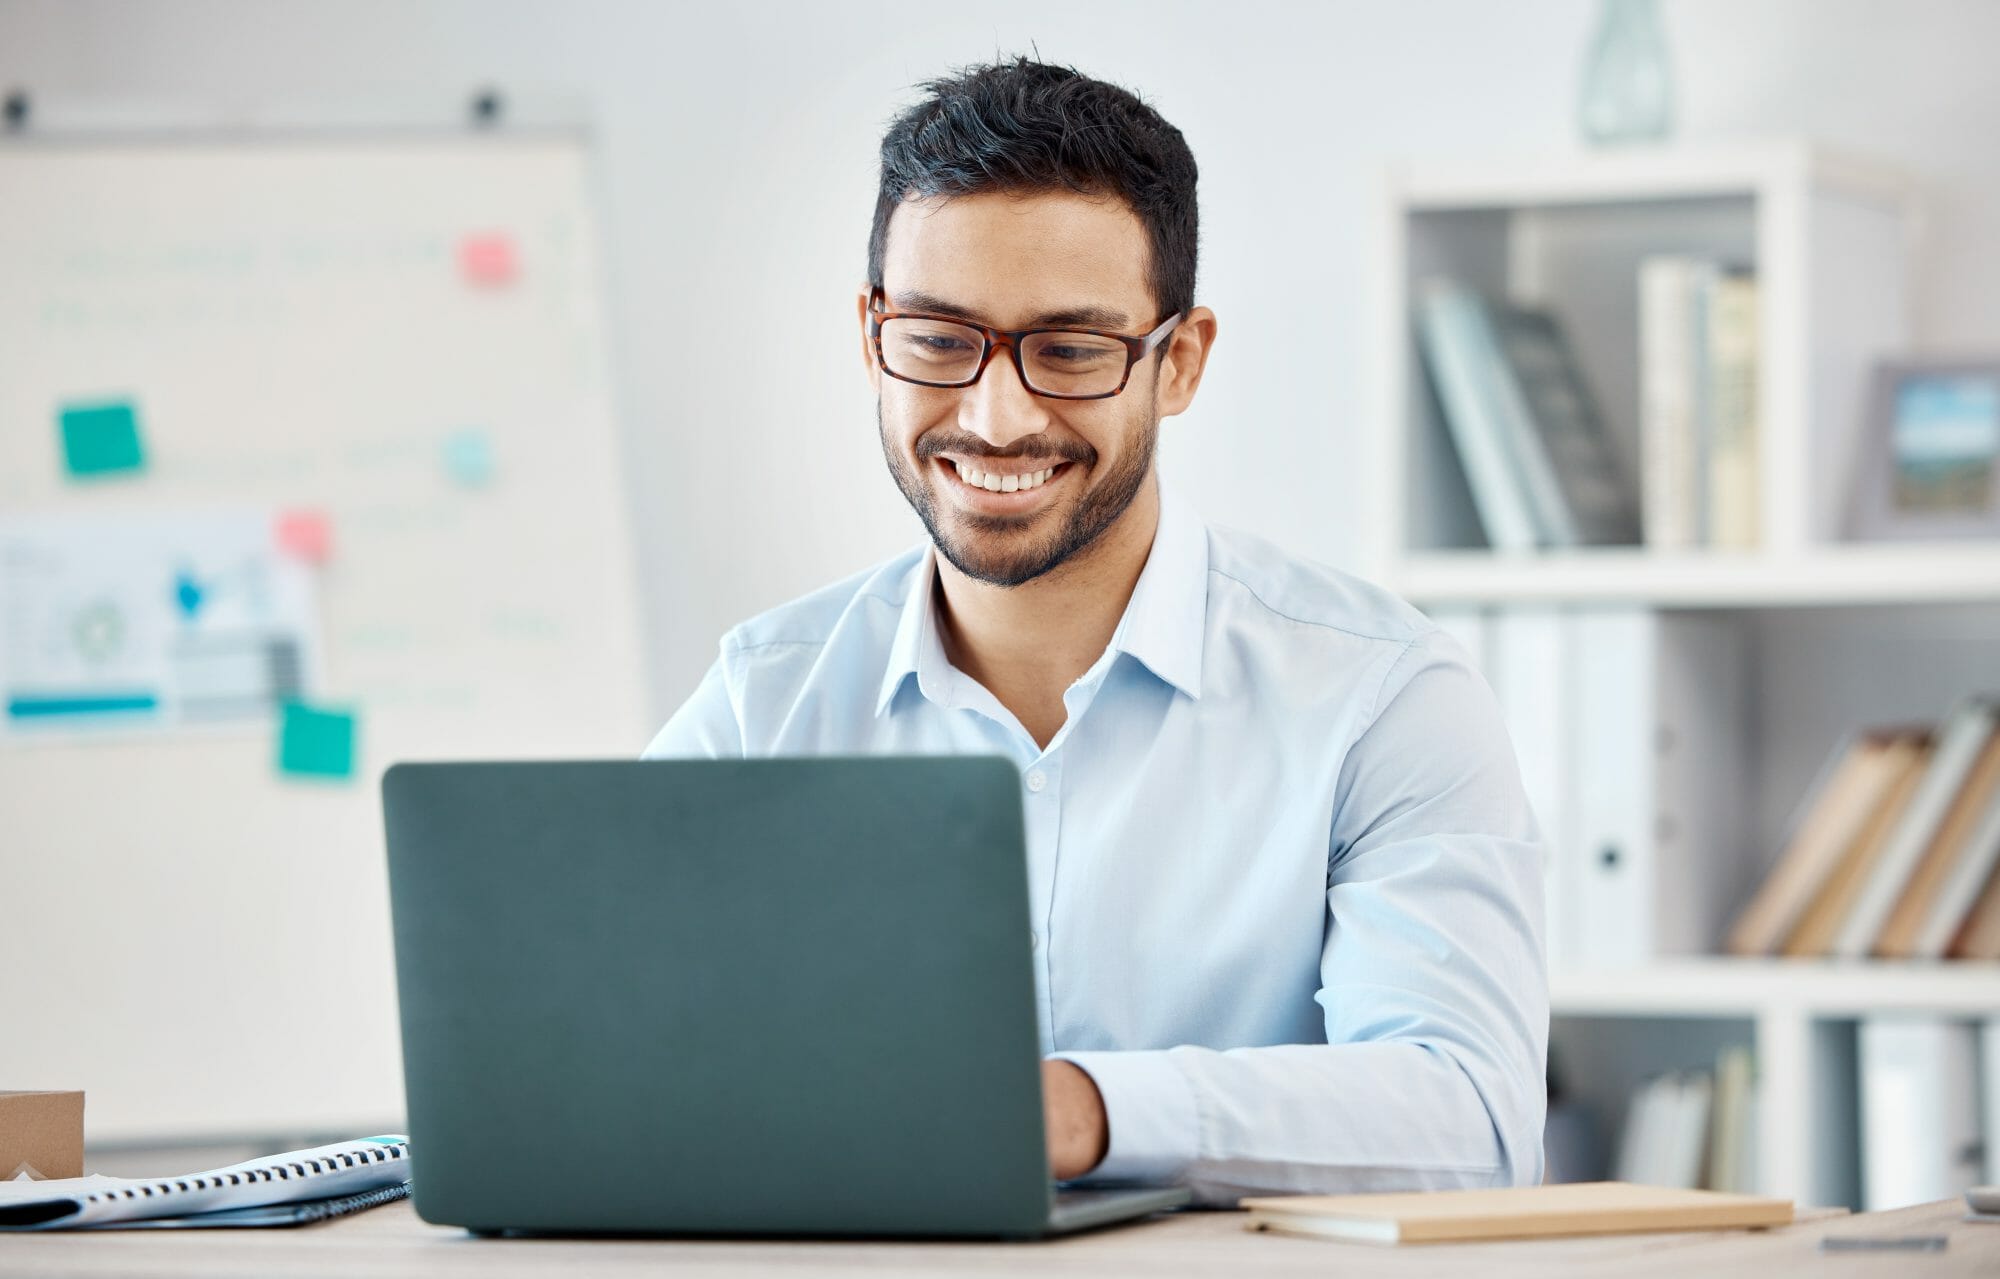 man smiling while working on laptop